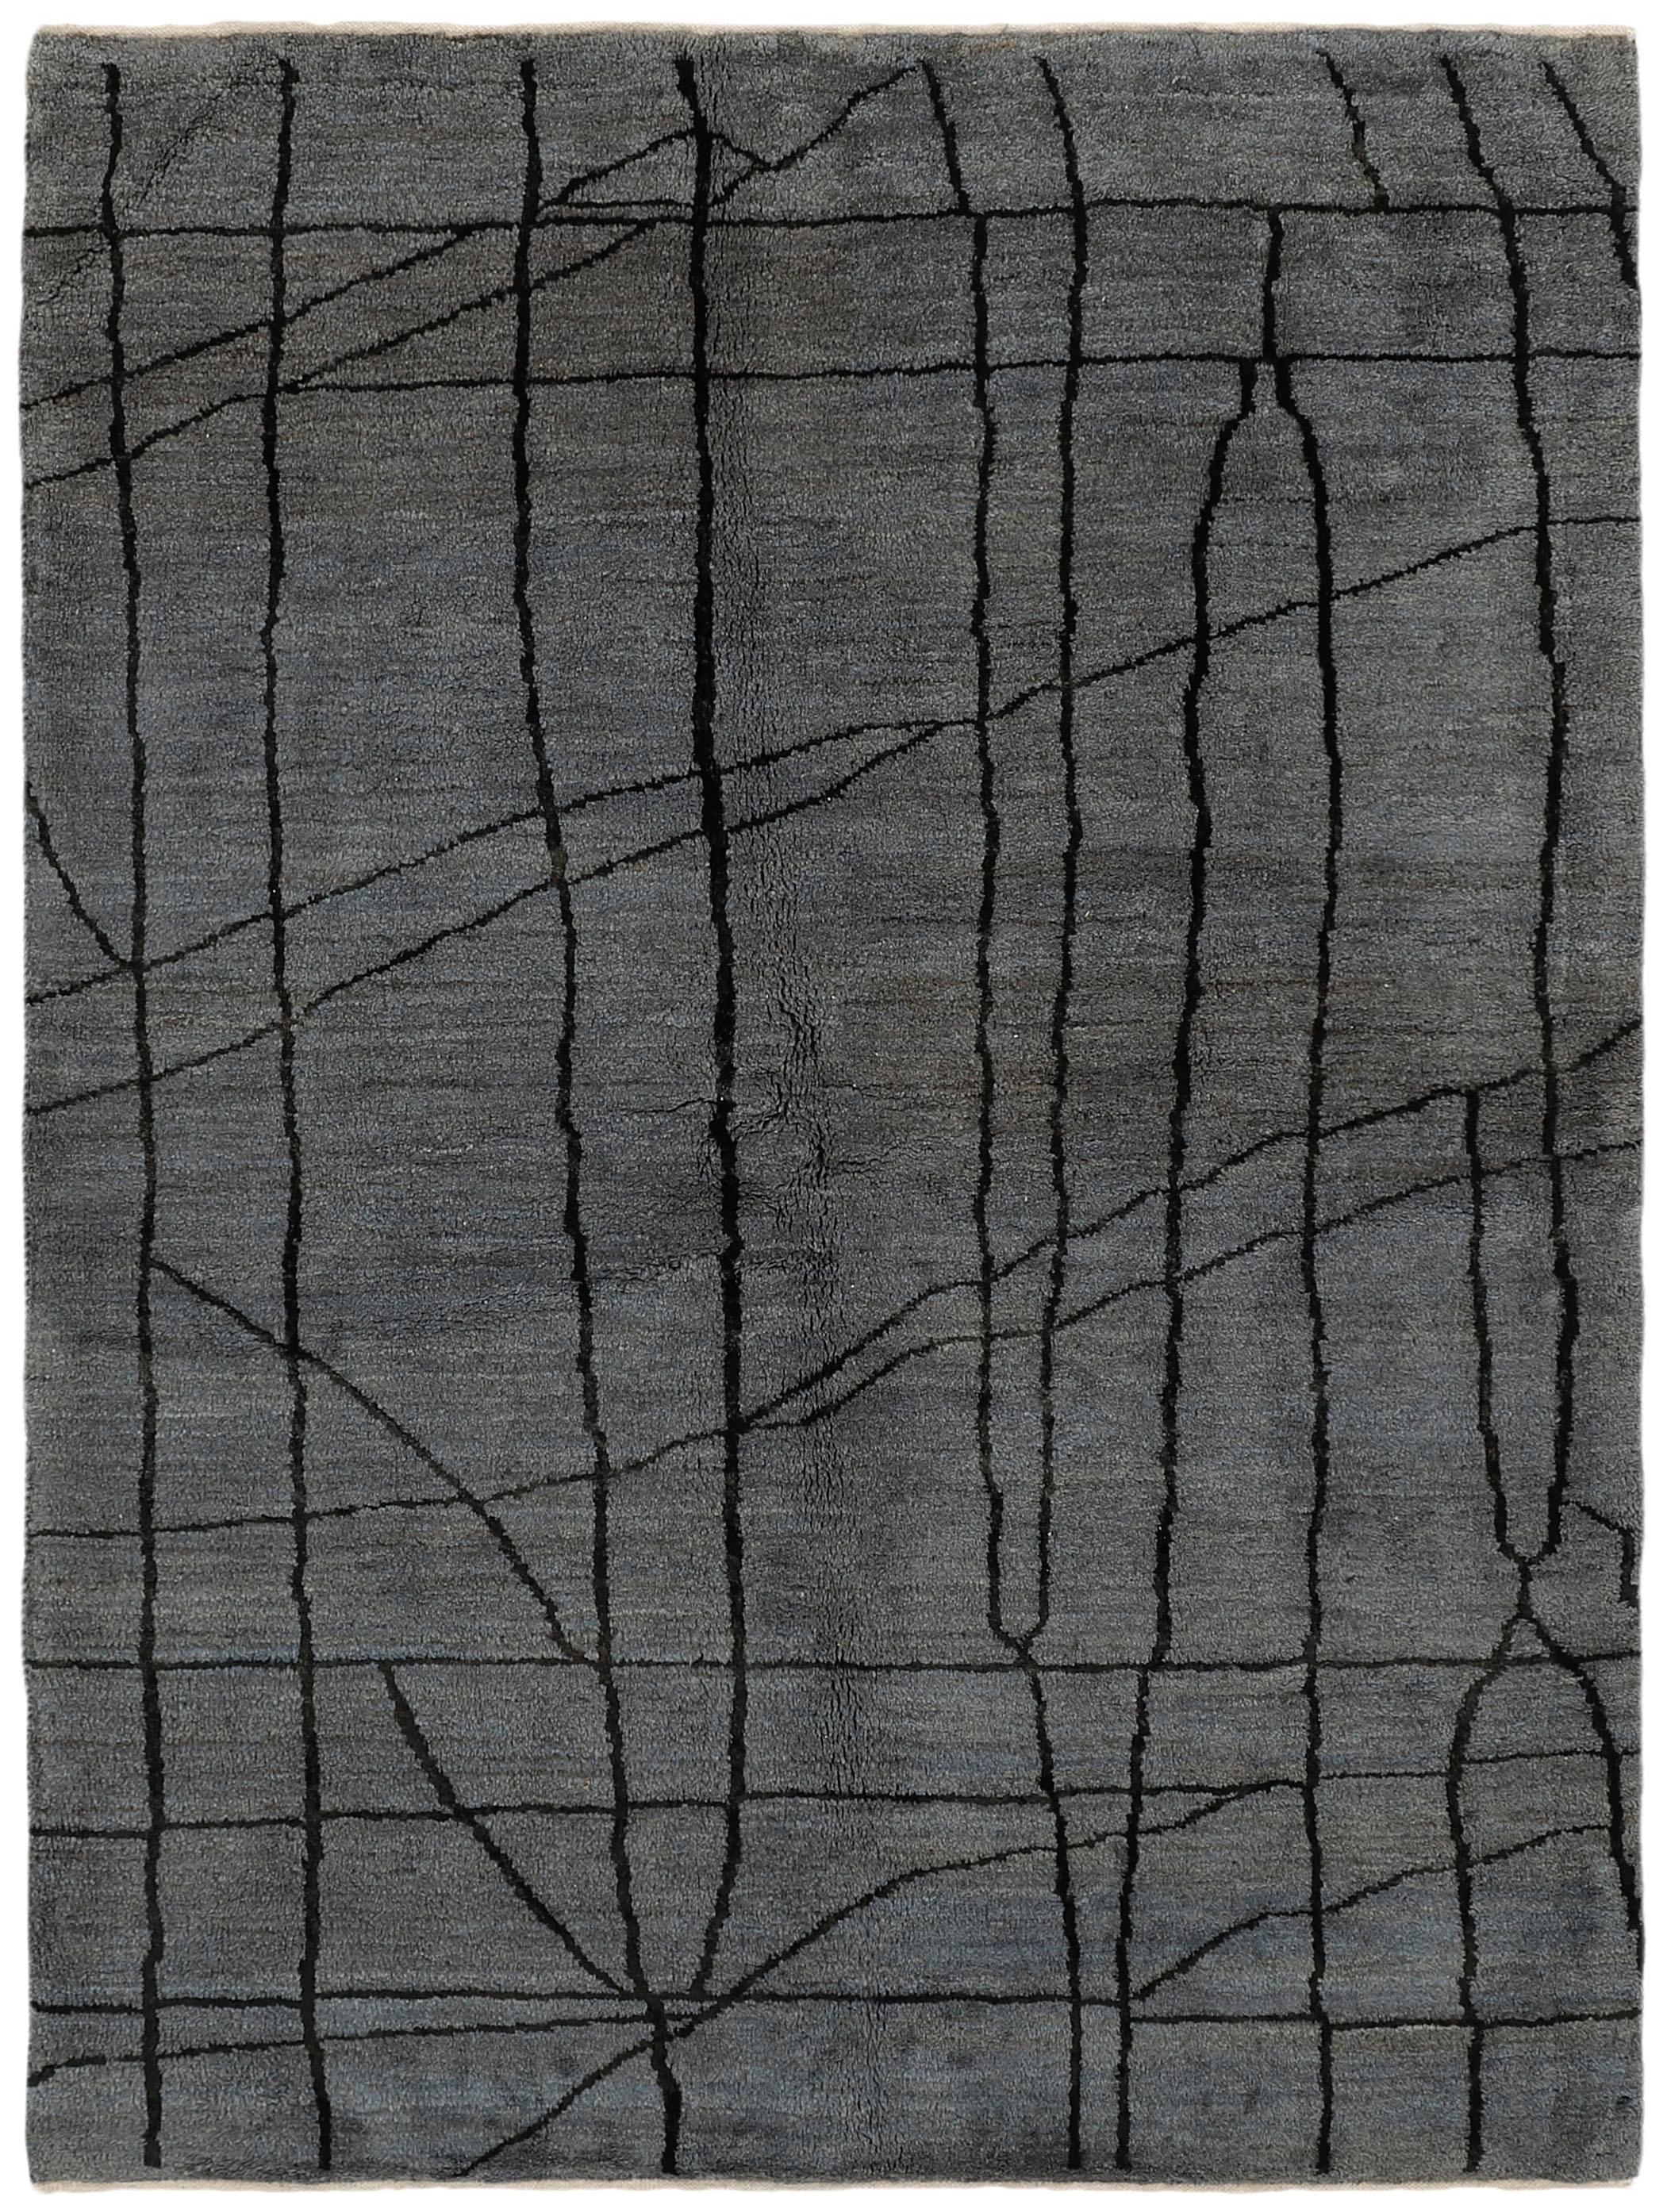 Authentic Oriental Kelim flatweave rug in grey, beige and brown